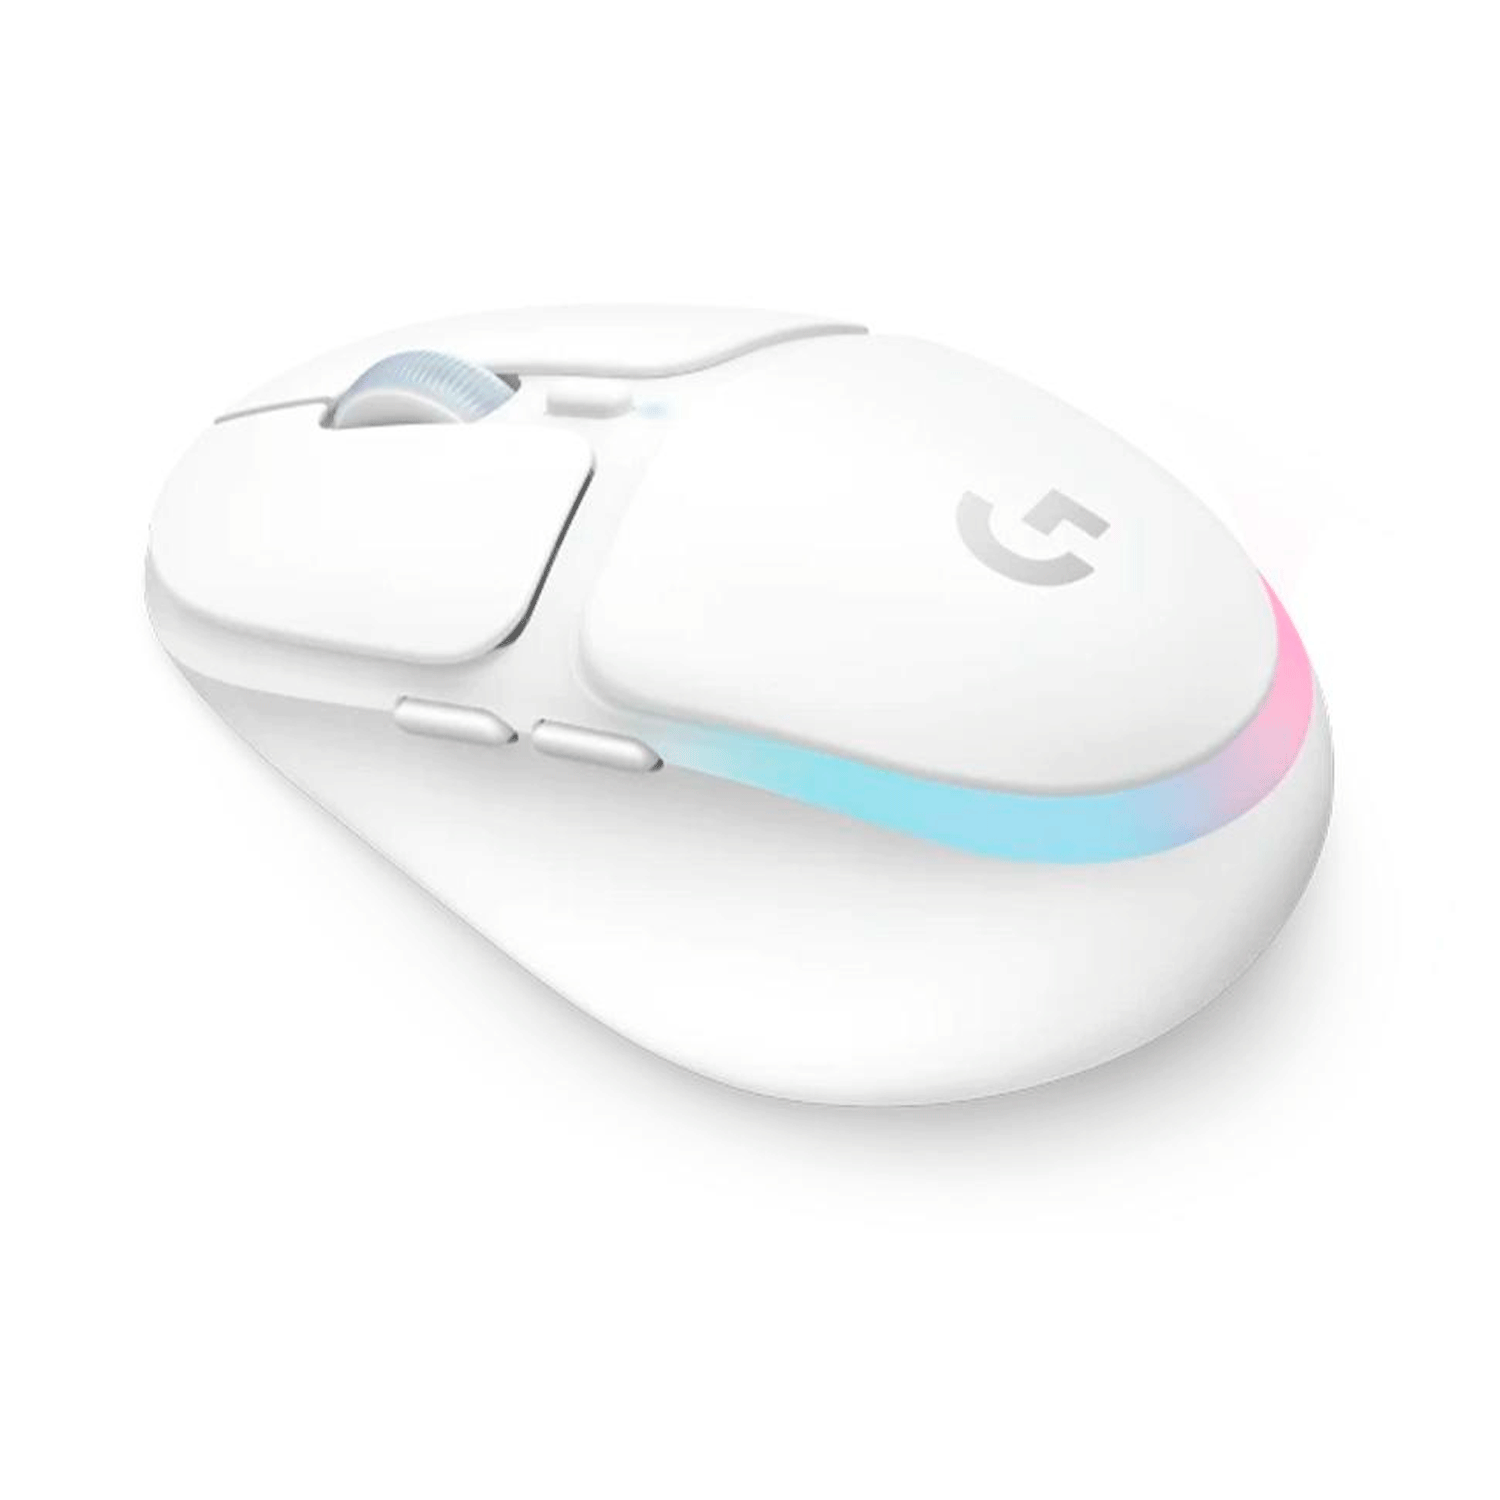 Mouse Gamer Logitech G705 Lightsync Wireless - Branco (910-006366)